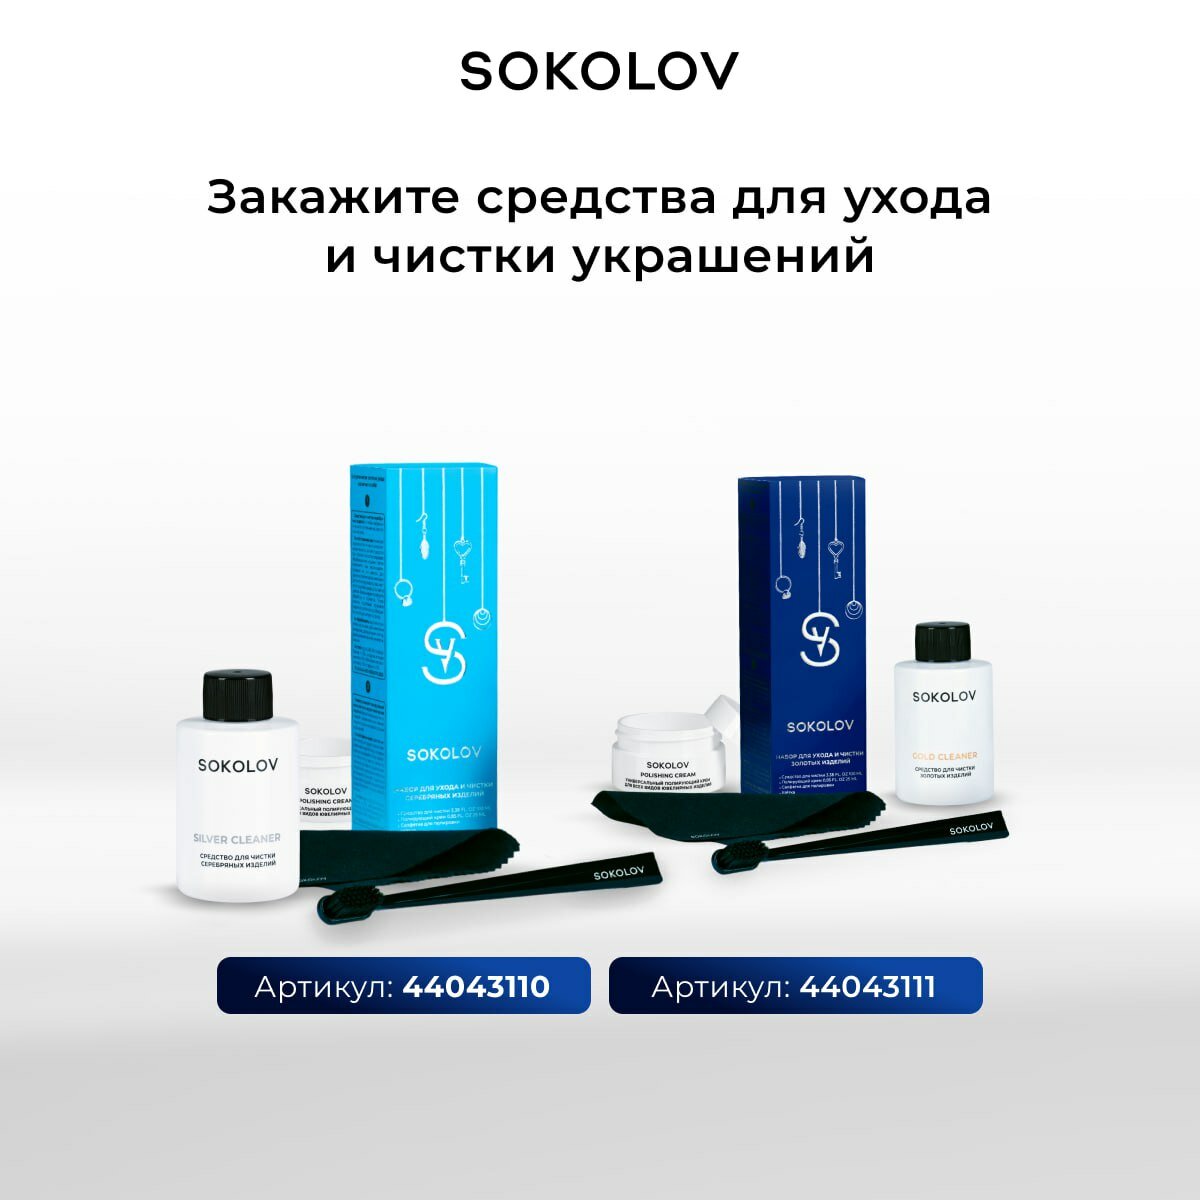 Серьги конго SOKOLOV, серебро, 925 проба, золочение